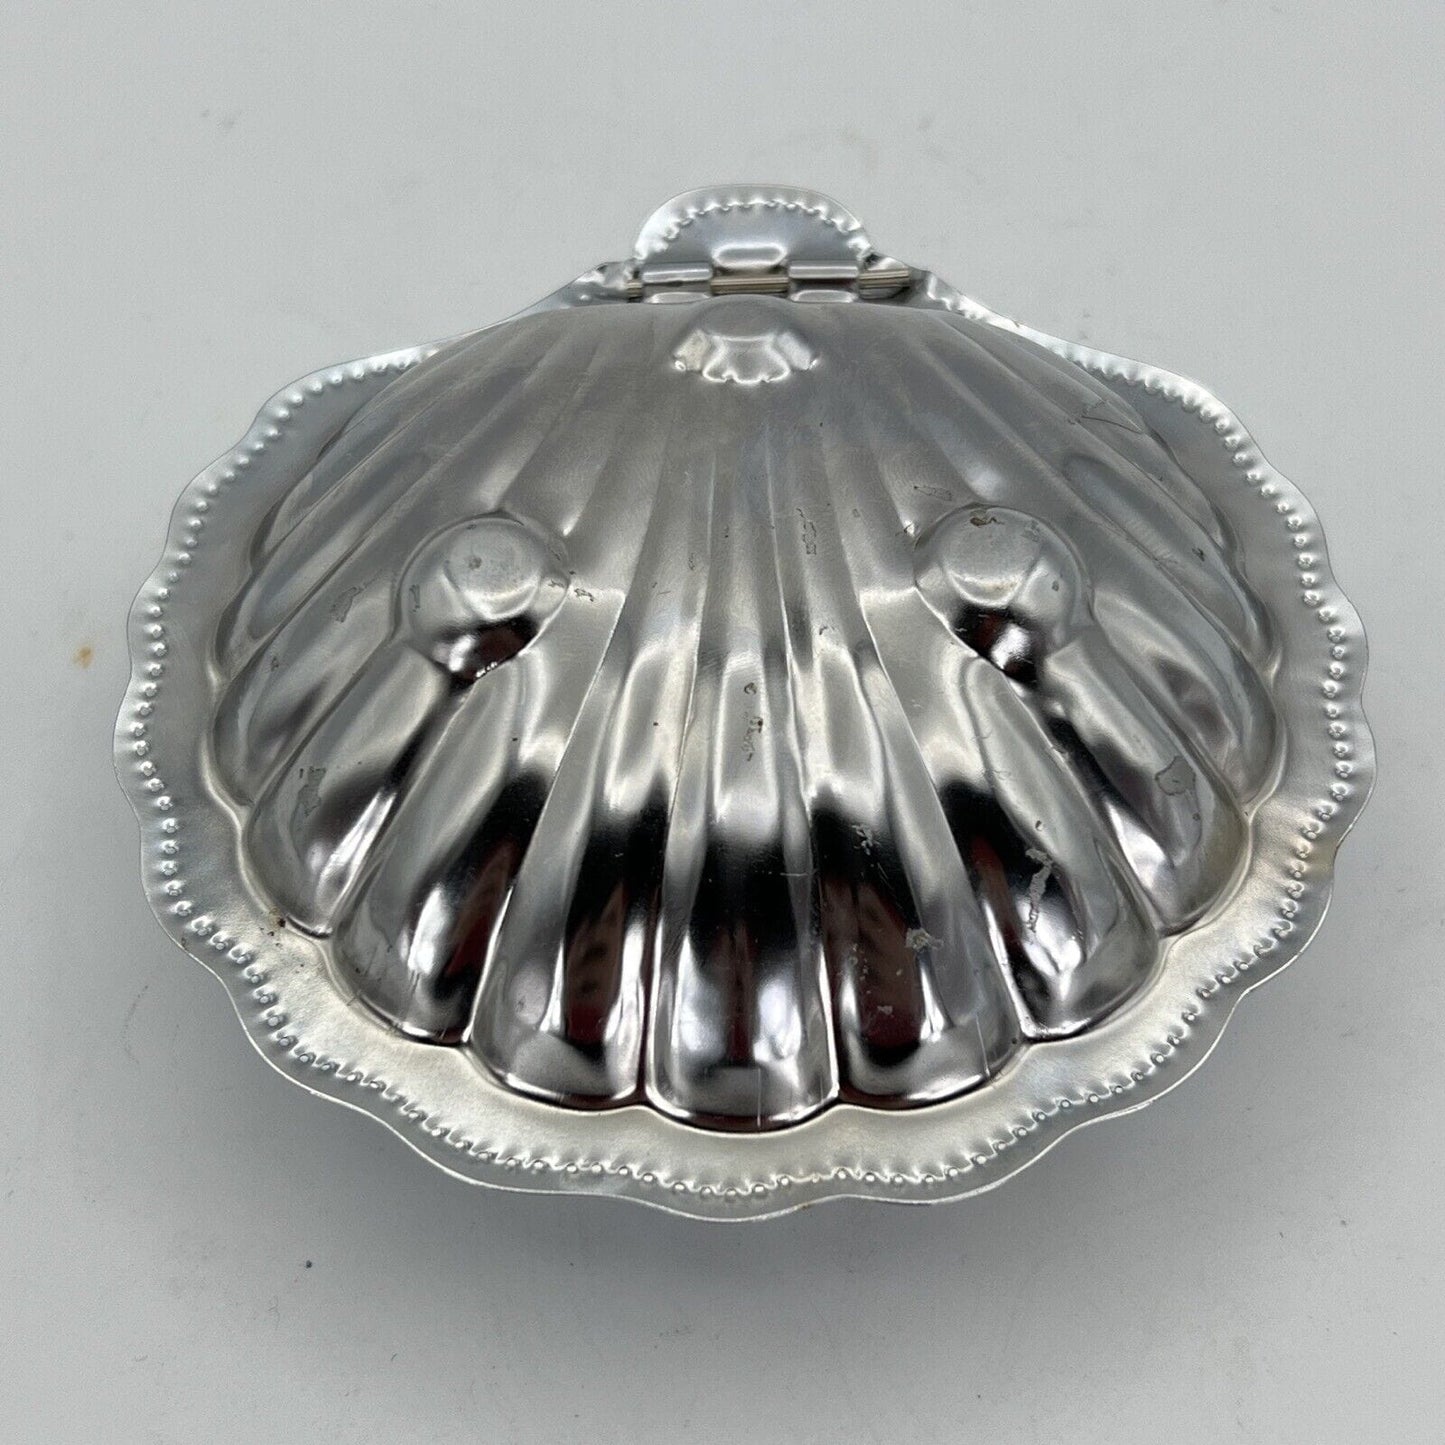 Antico Portaburro Burriera in silver plated forma di conchiglia d'epoca Vintage Categoria  Silver plated sheffield style